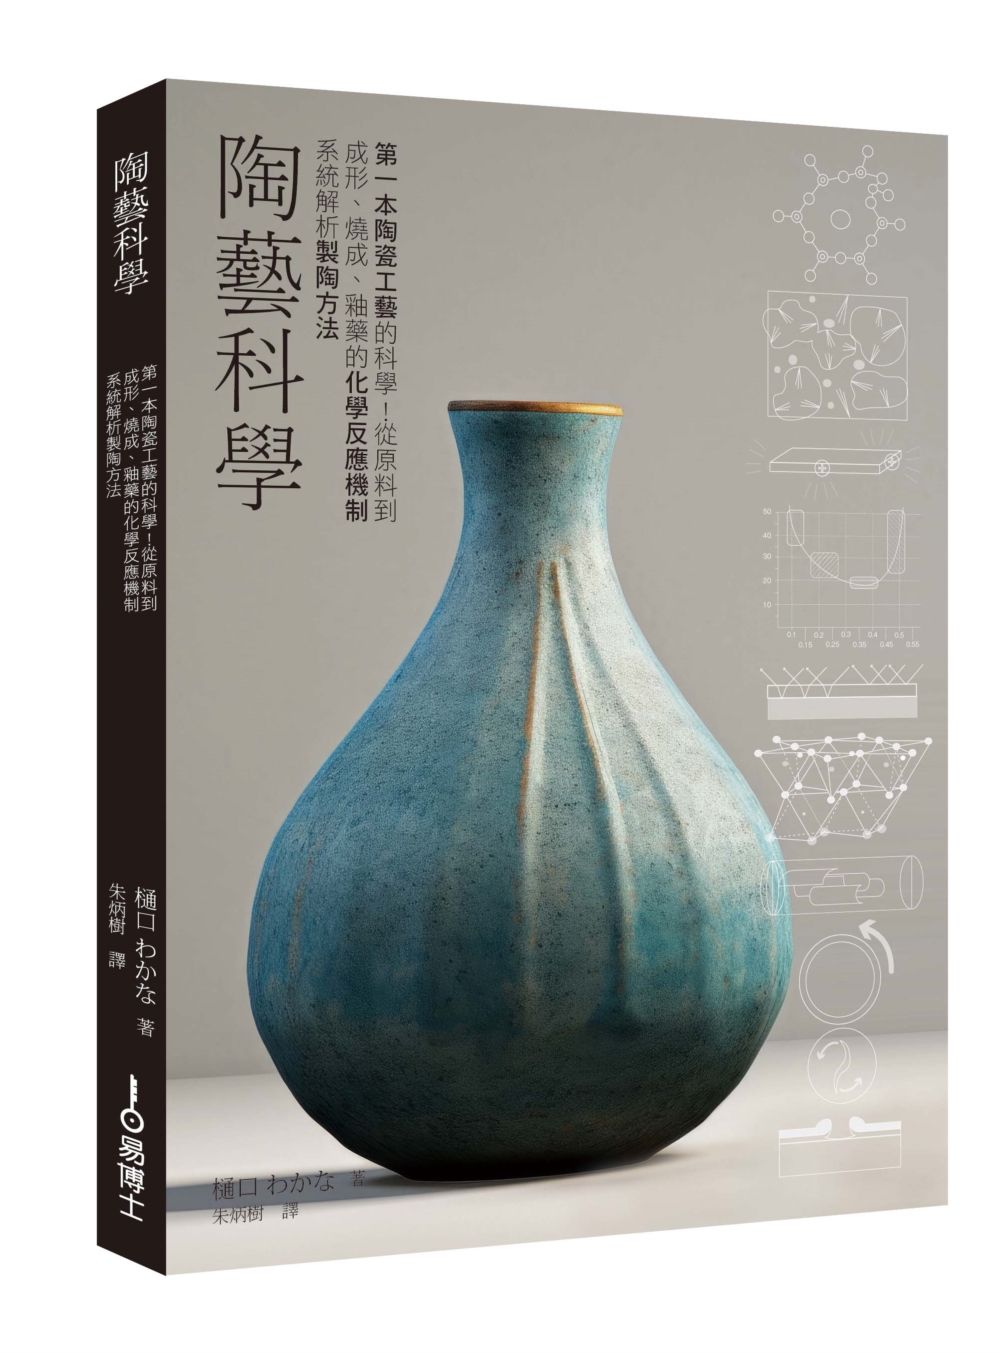 陶藝科學：第一本陶瓷工藝的科學！從原料到成形、燒成、釉藥的化學反應機制系統解析製陶方法